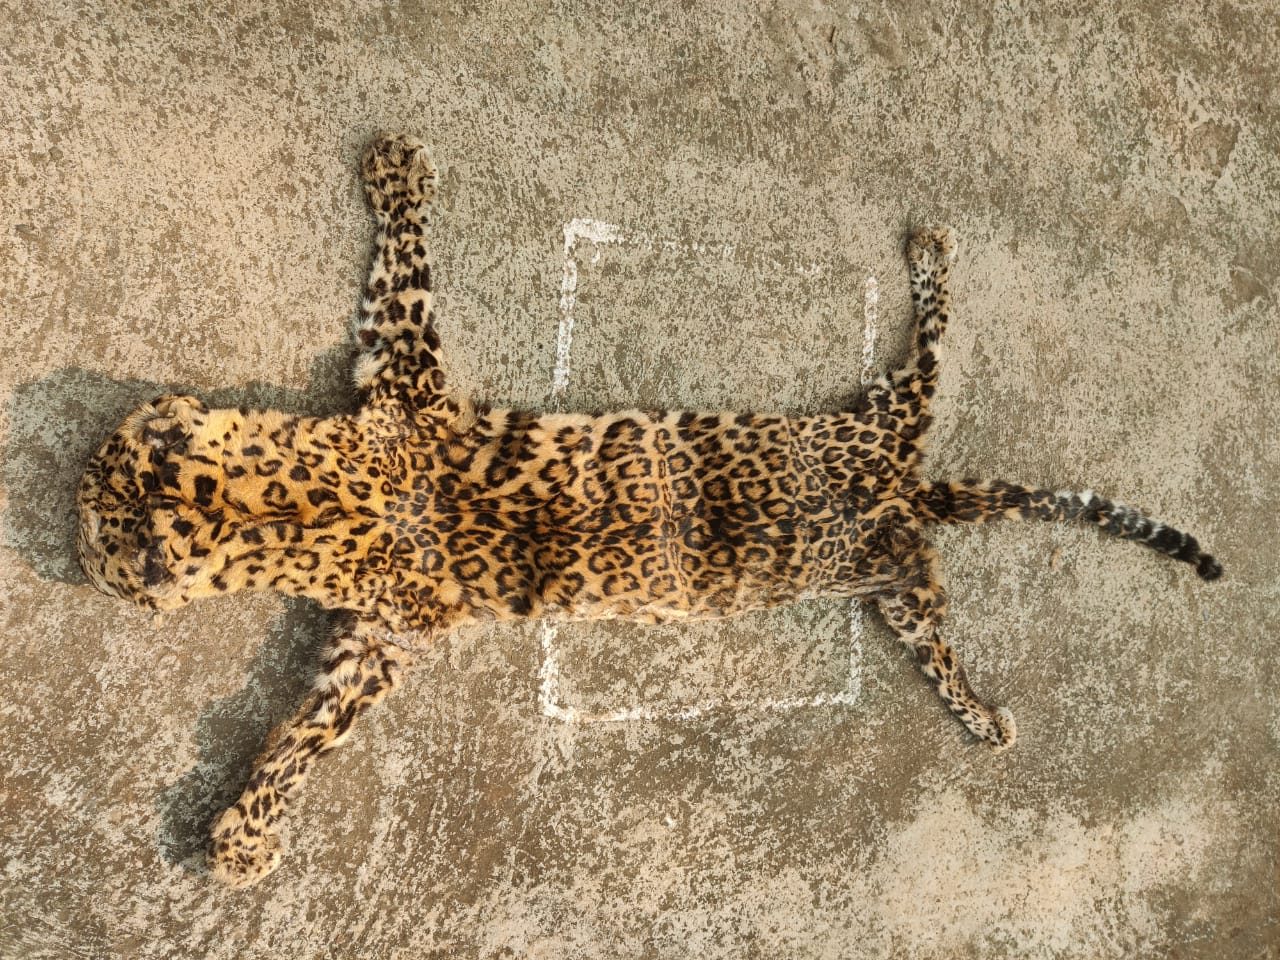 Leopard skin seized, 2 held in Mayurbhanj d